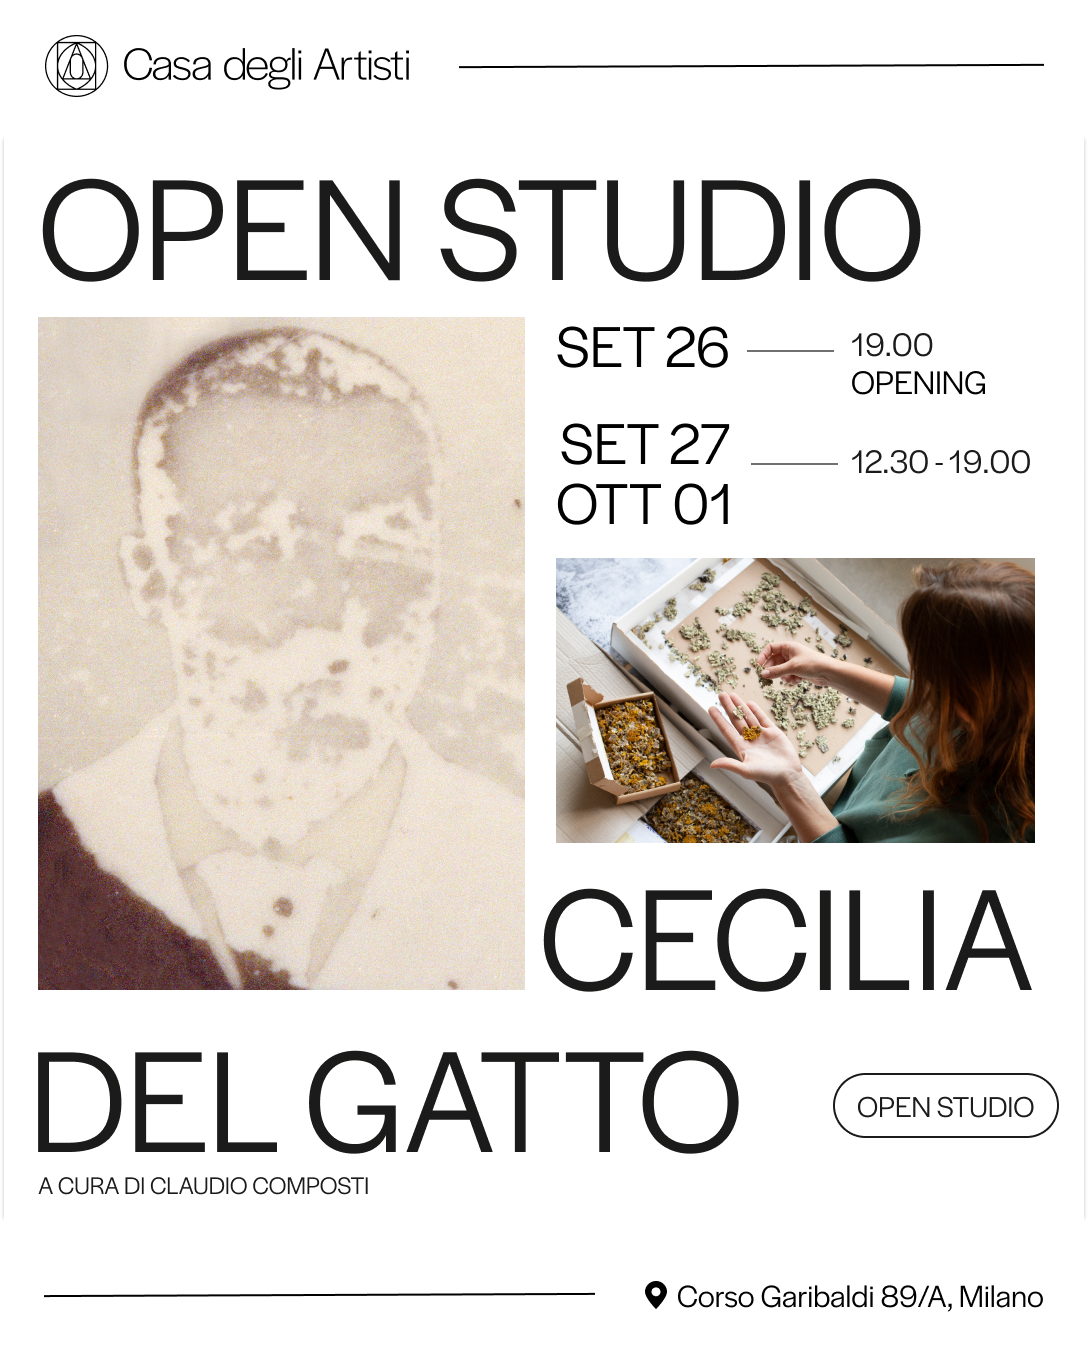 Open Studio, Cecilia Del Gatto – Casa degli Artisti